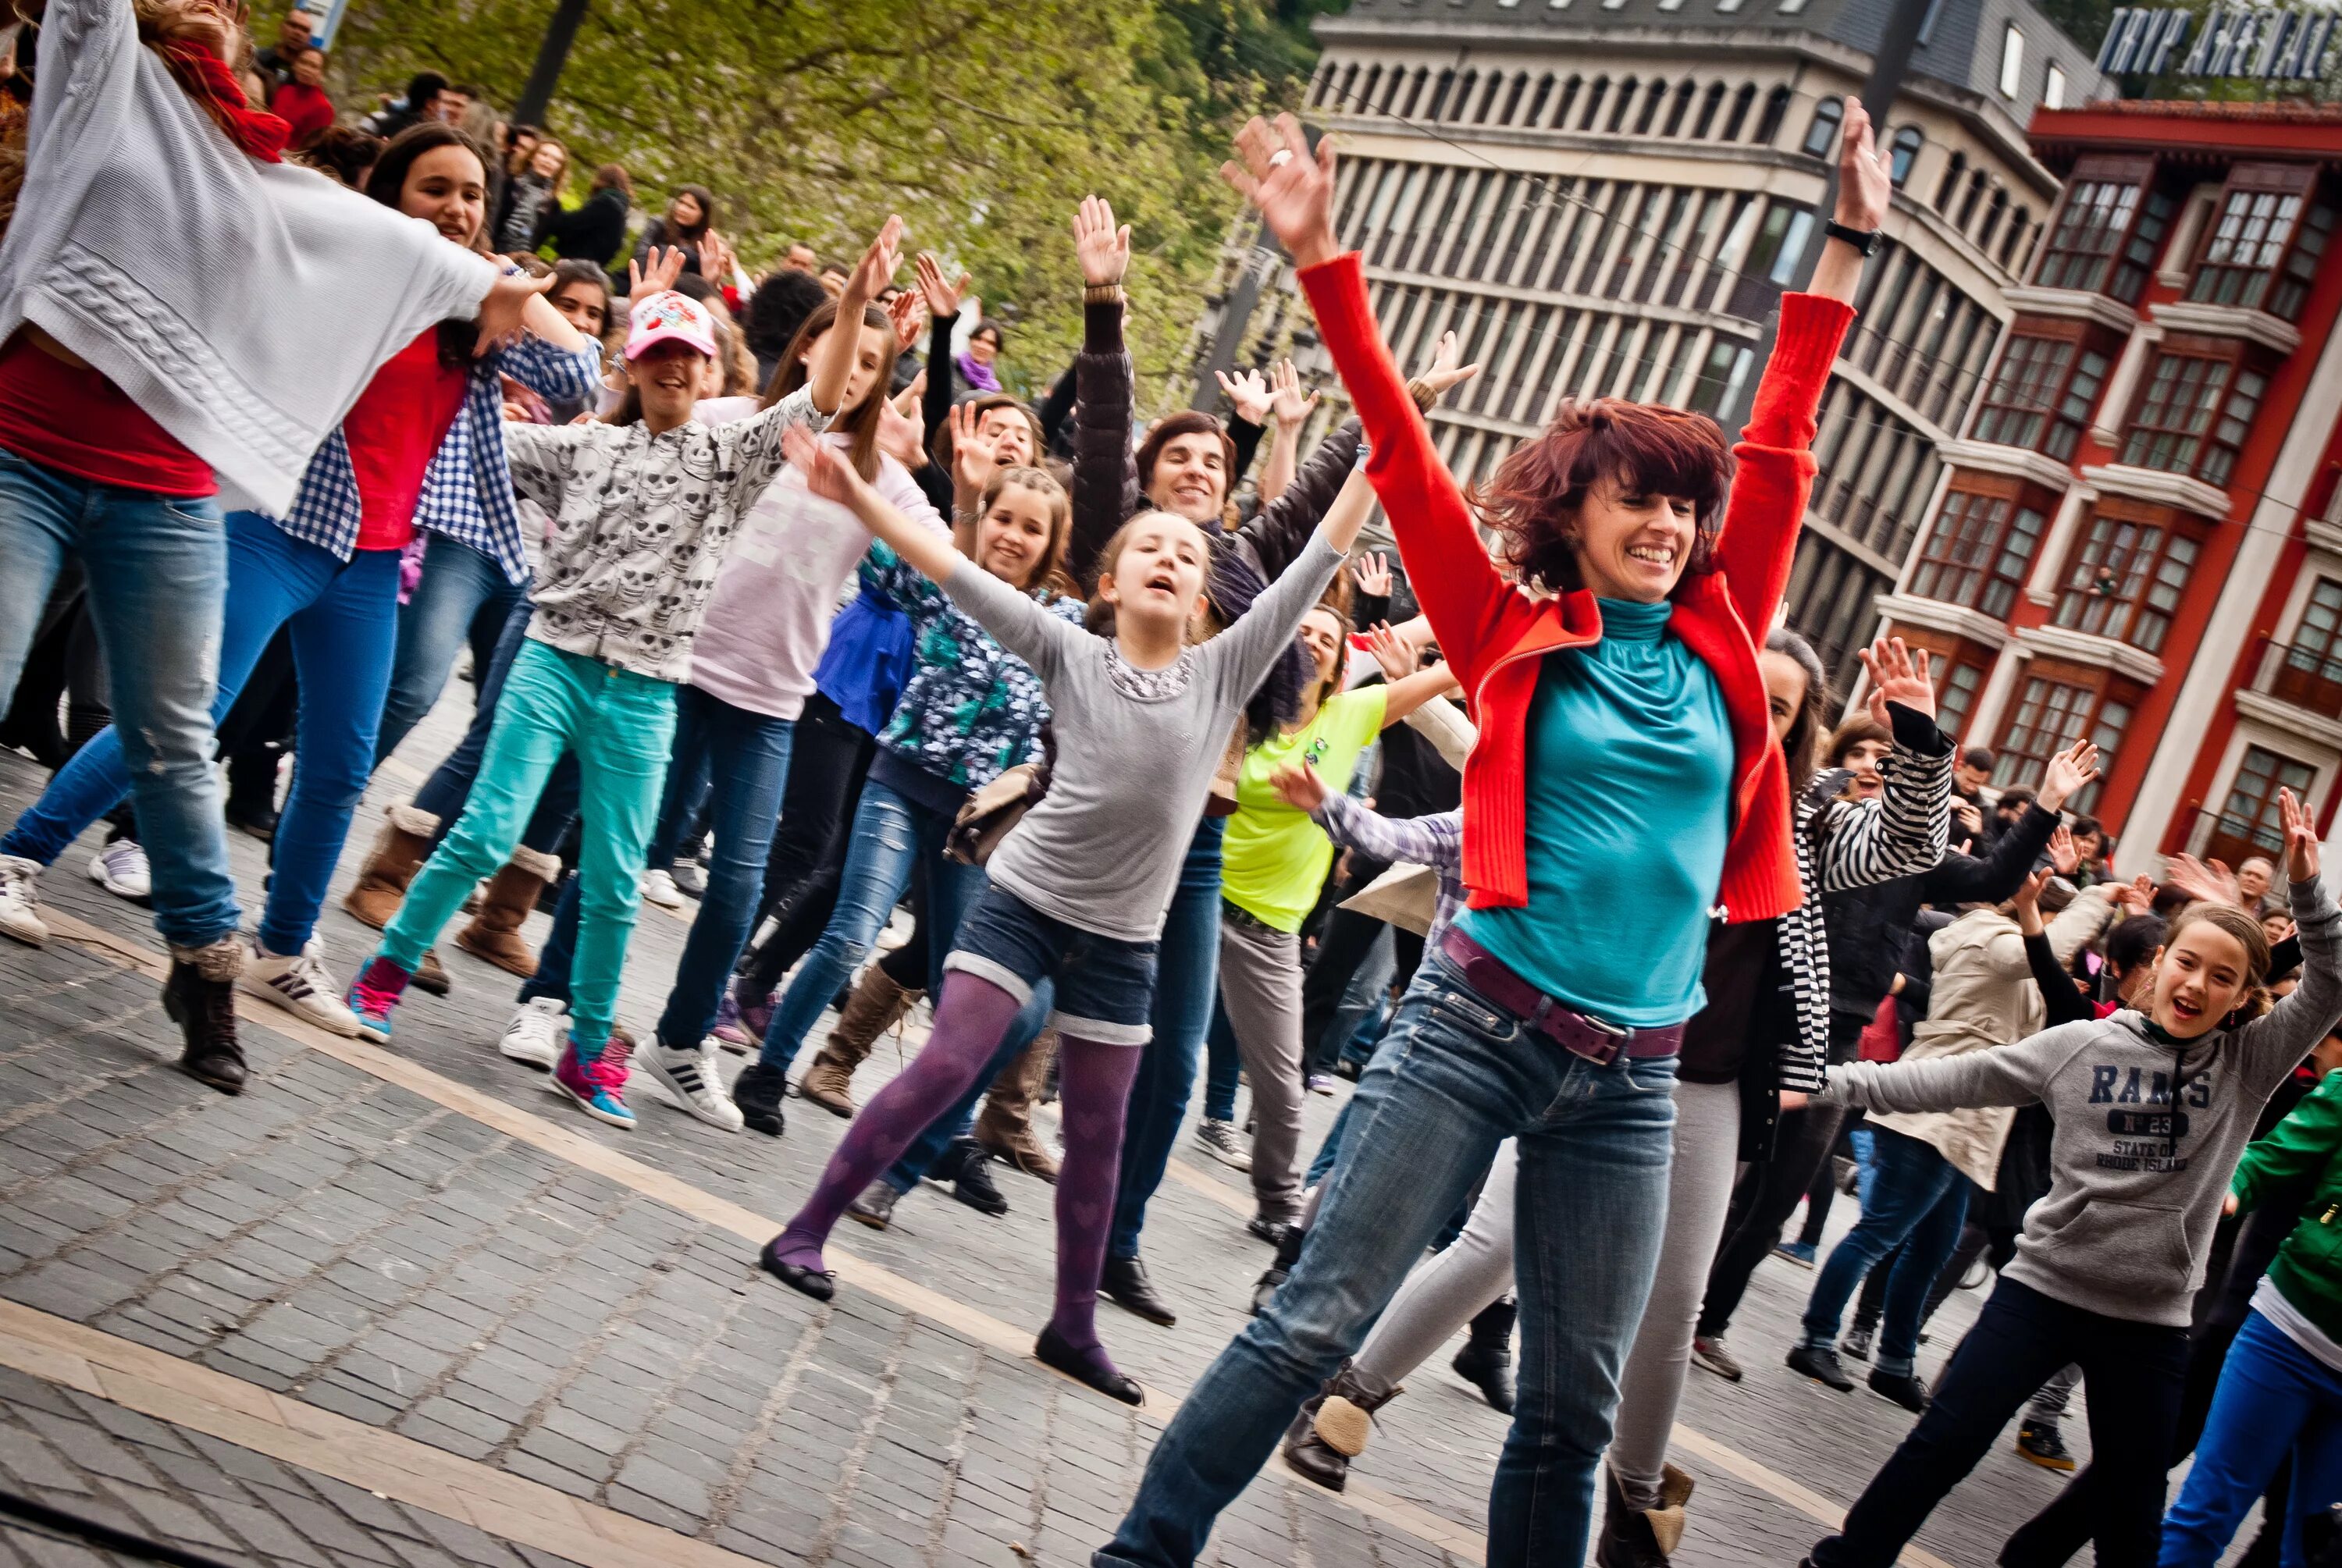 Демонстрация предложения. Флэшмоб. Молодежь на улице. Массовые мероприятия для молодежи. Массовые танцы на улице.